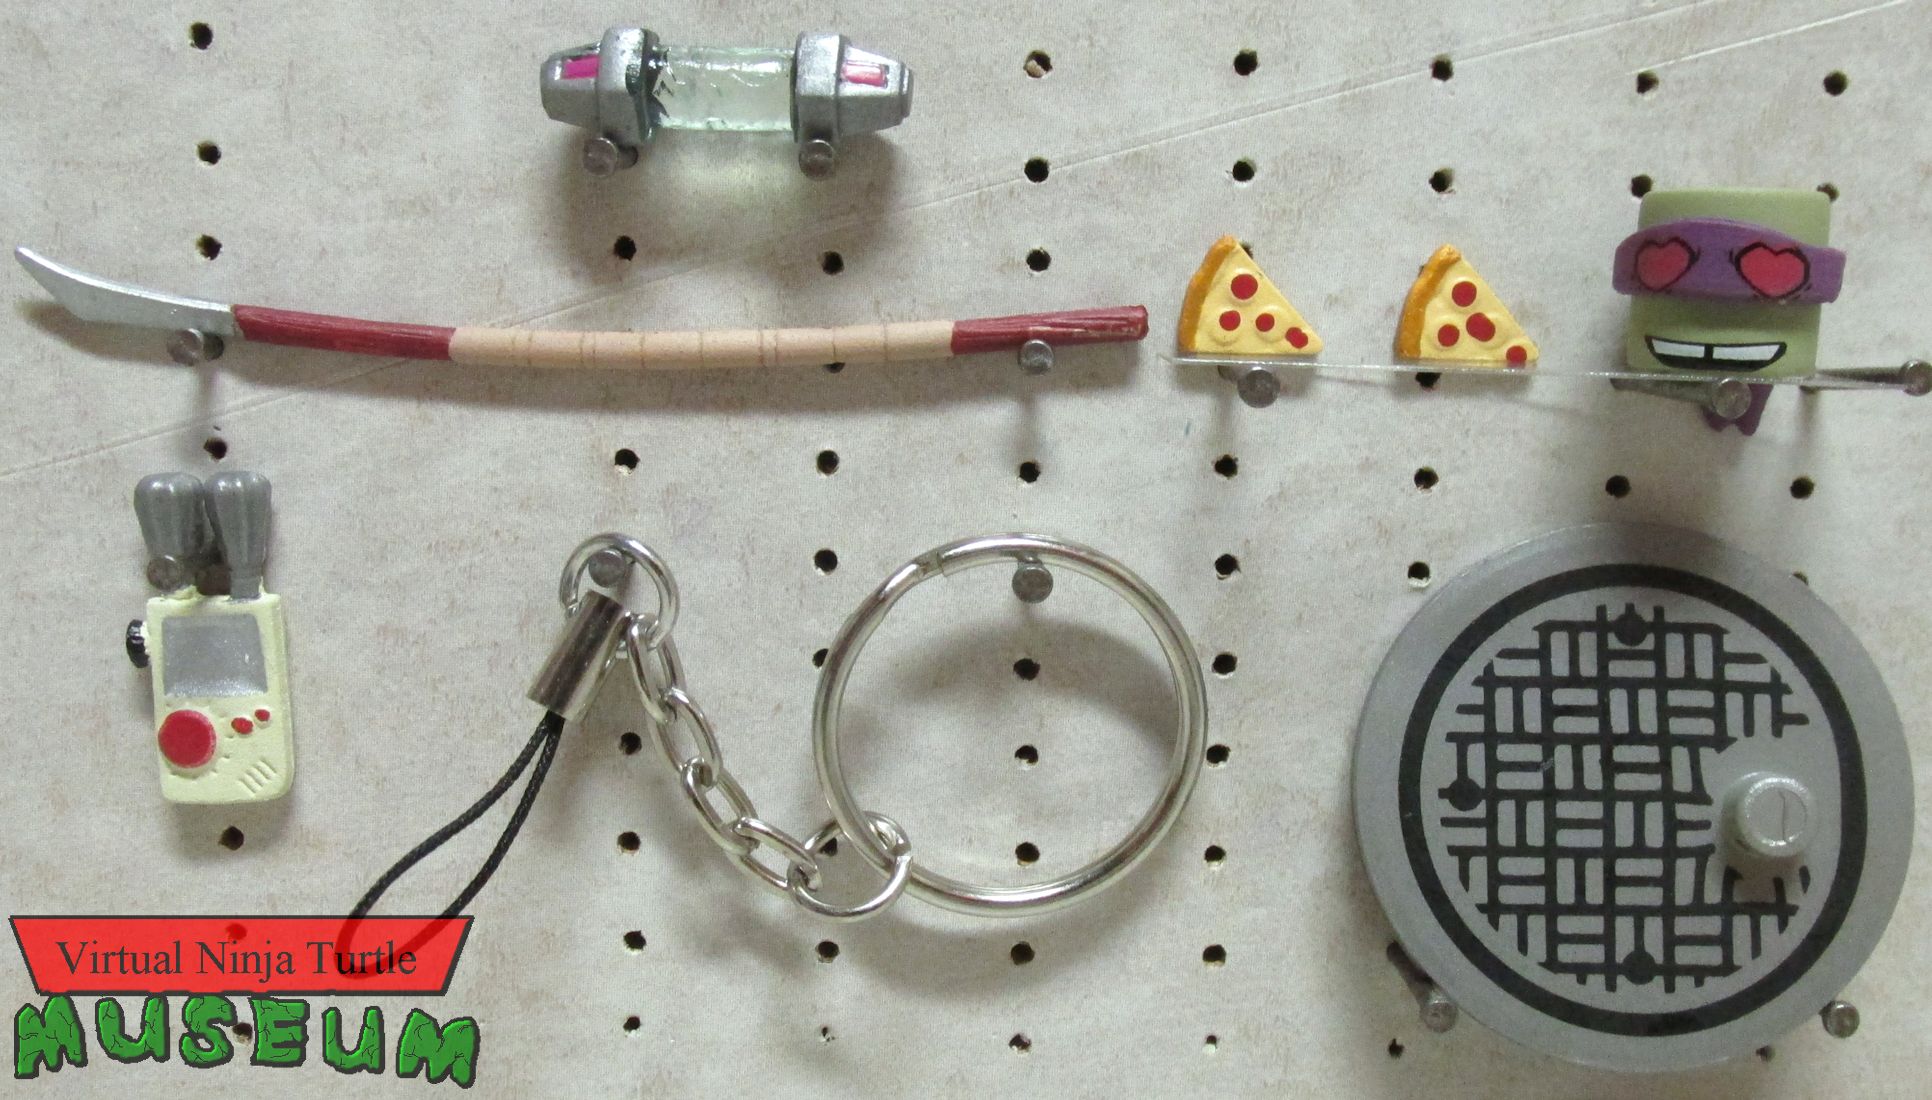 Sewer Gear Donatello's accessories